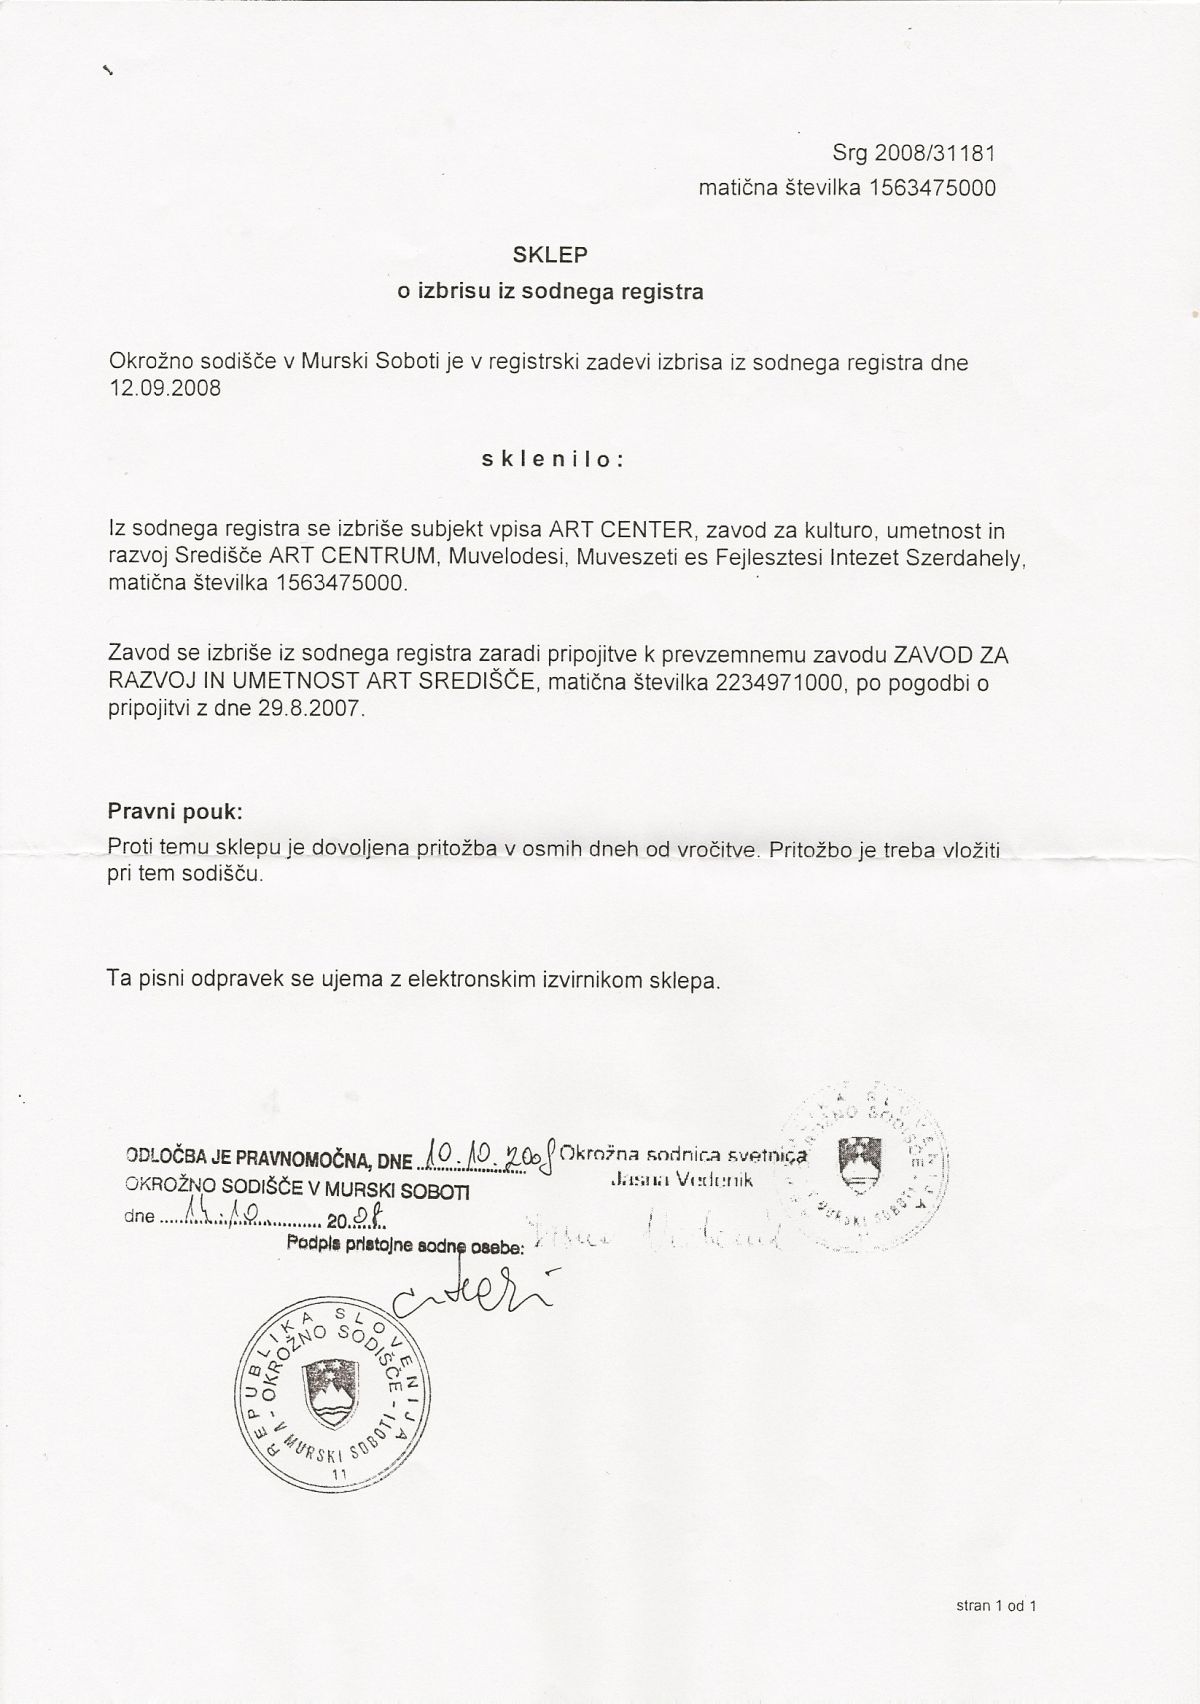 Sodni register: Vpis pripojitve zavoda Art center k zavodu Art središče, oktober 2008. Pripojitev je omogočila obuditev umetniškega centra.